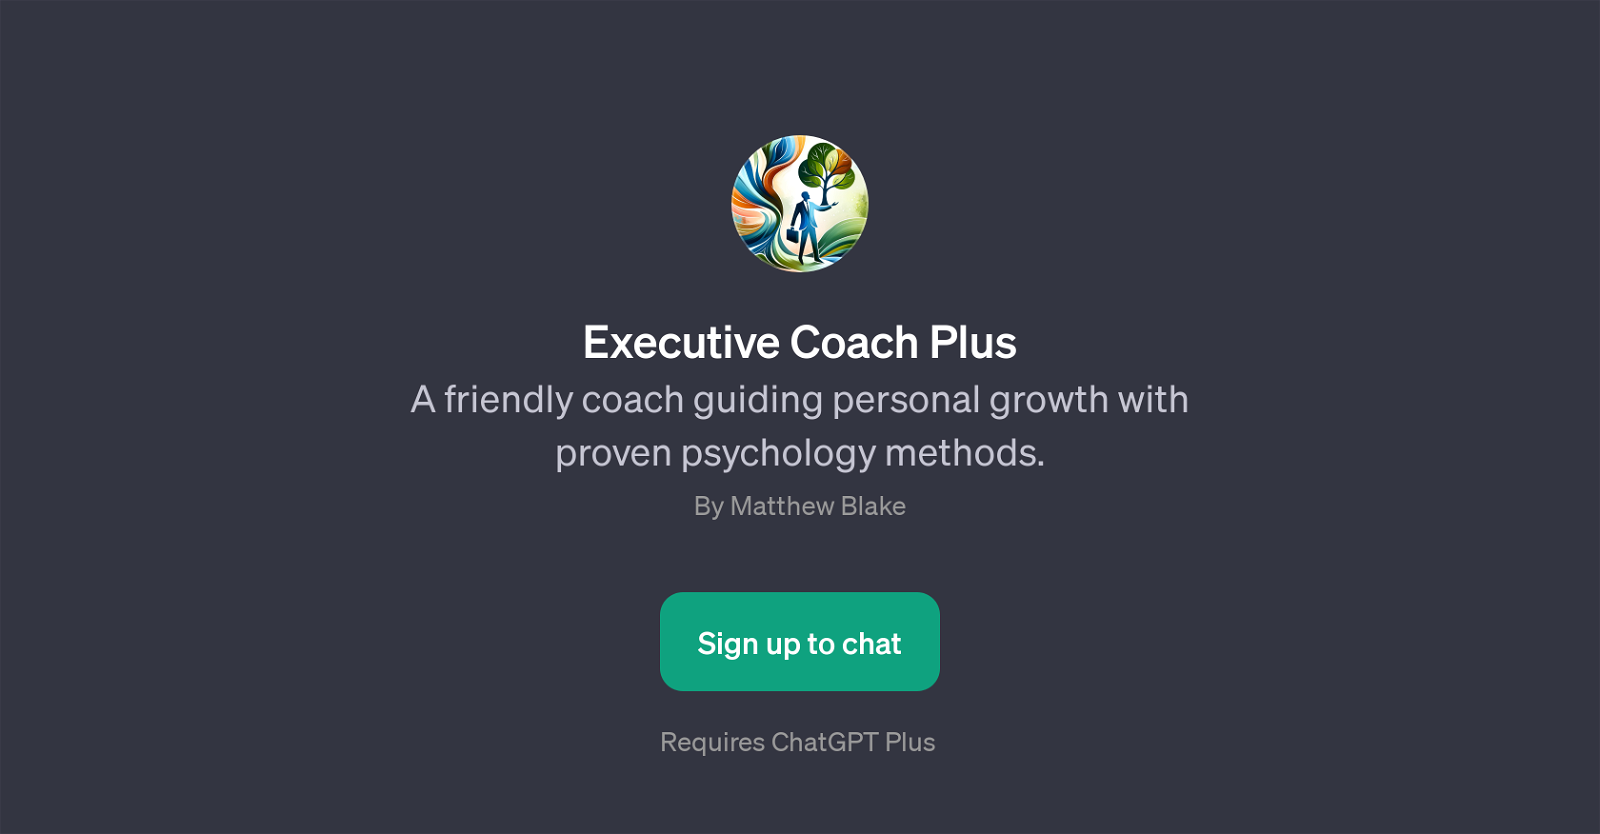 Executive Coach Plus website